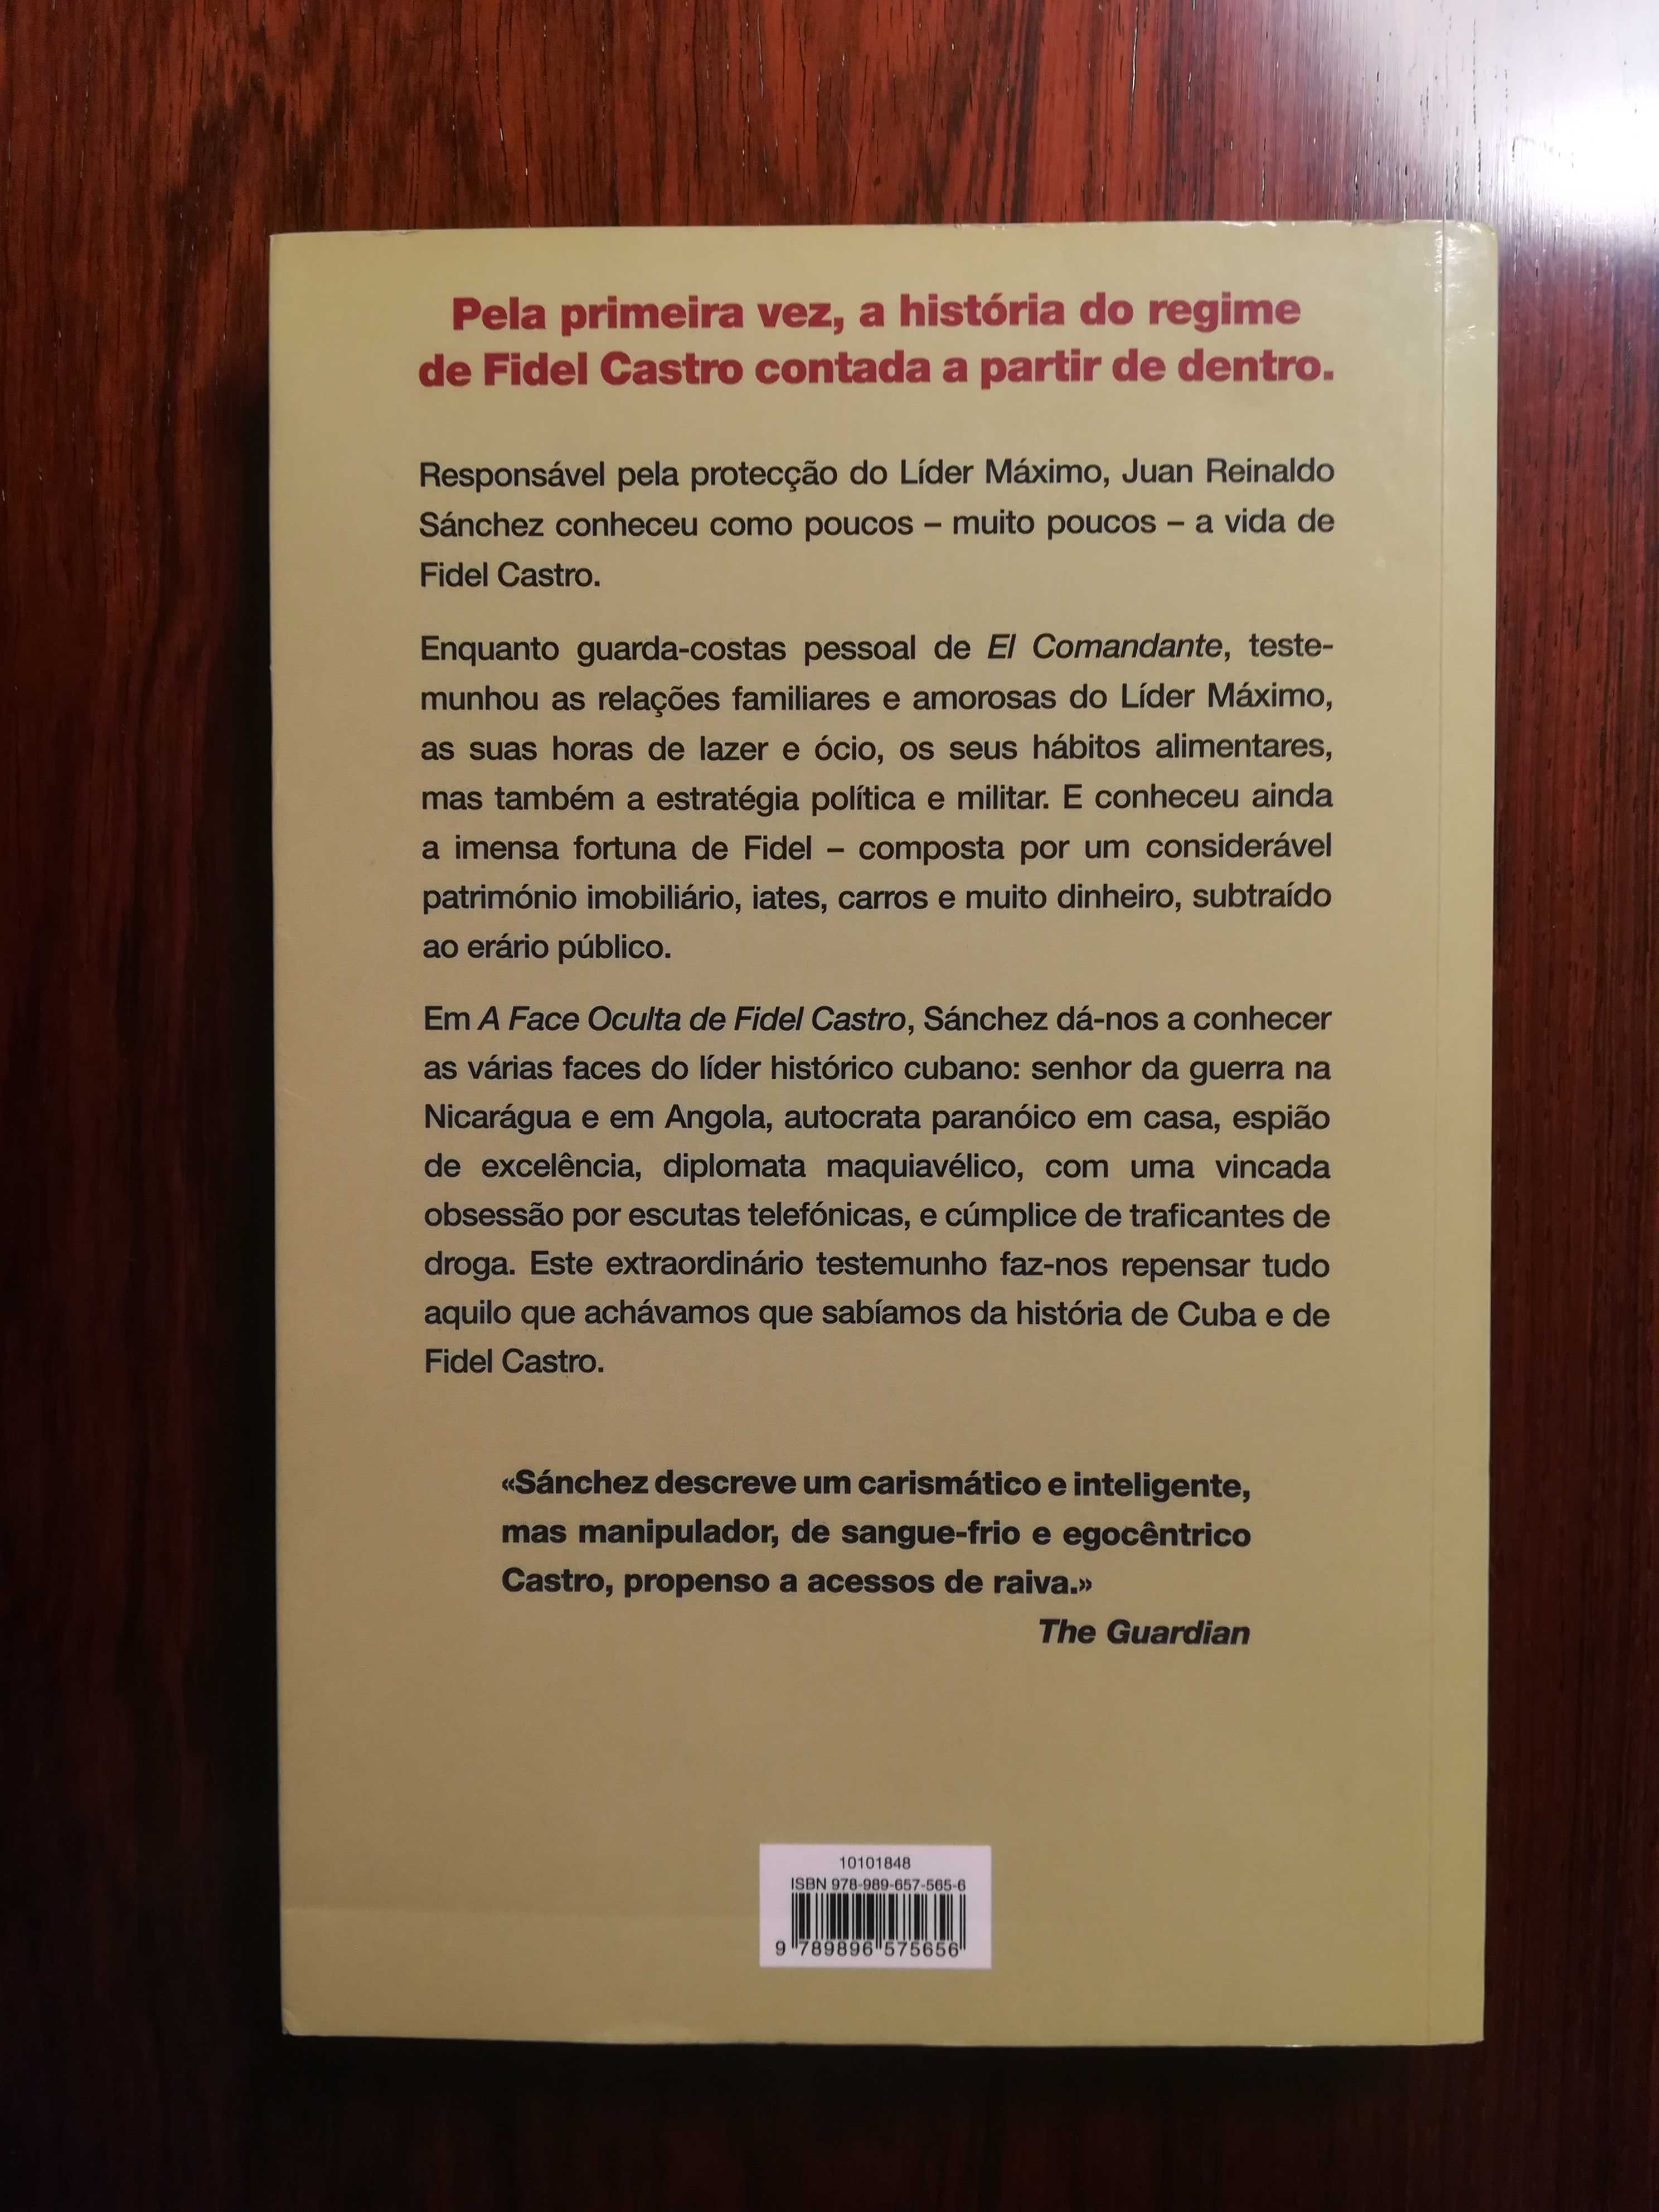 Livro "A Face Oculta de Fidel Castro", de Juan Reinaldo Sánchez